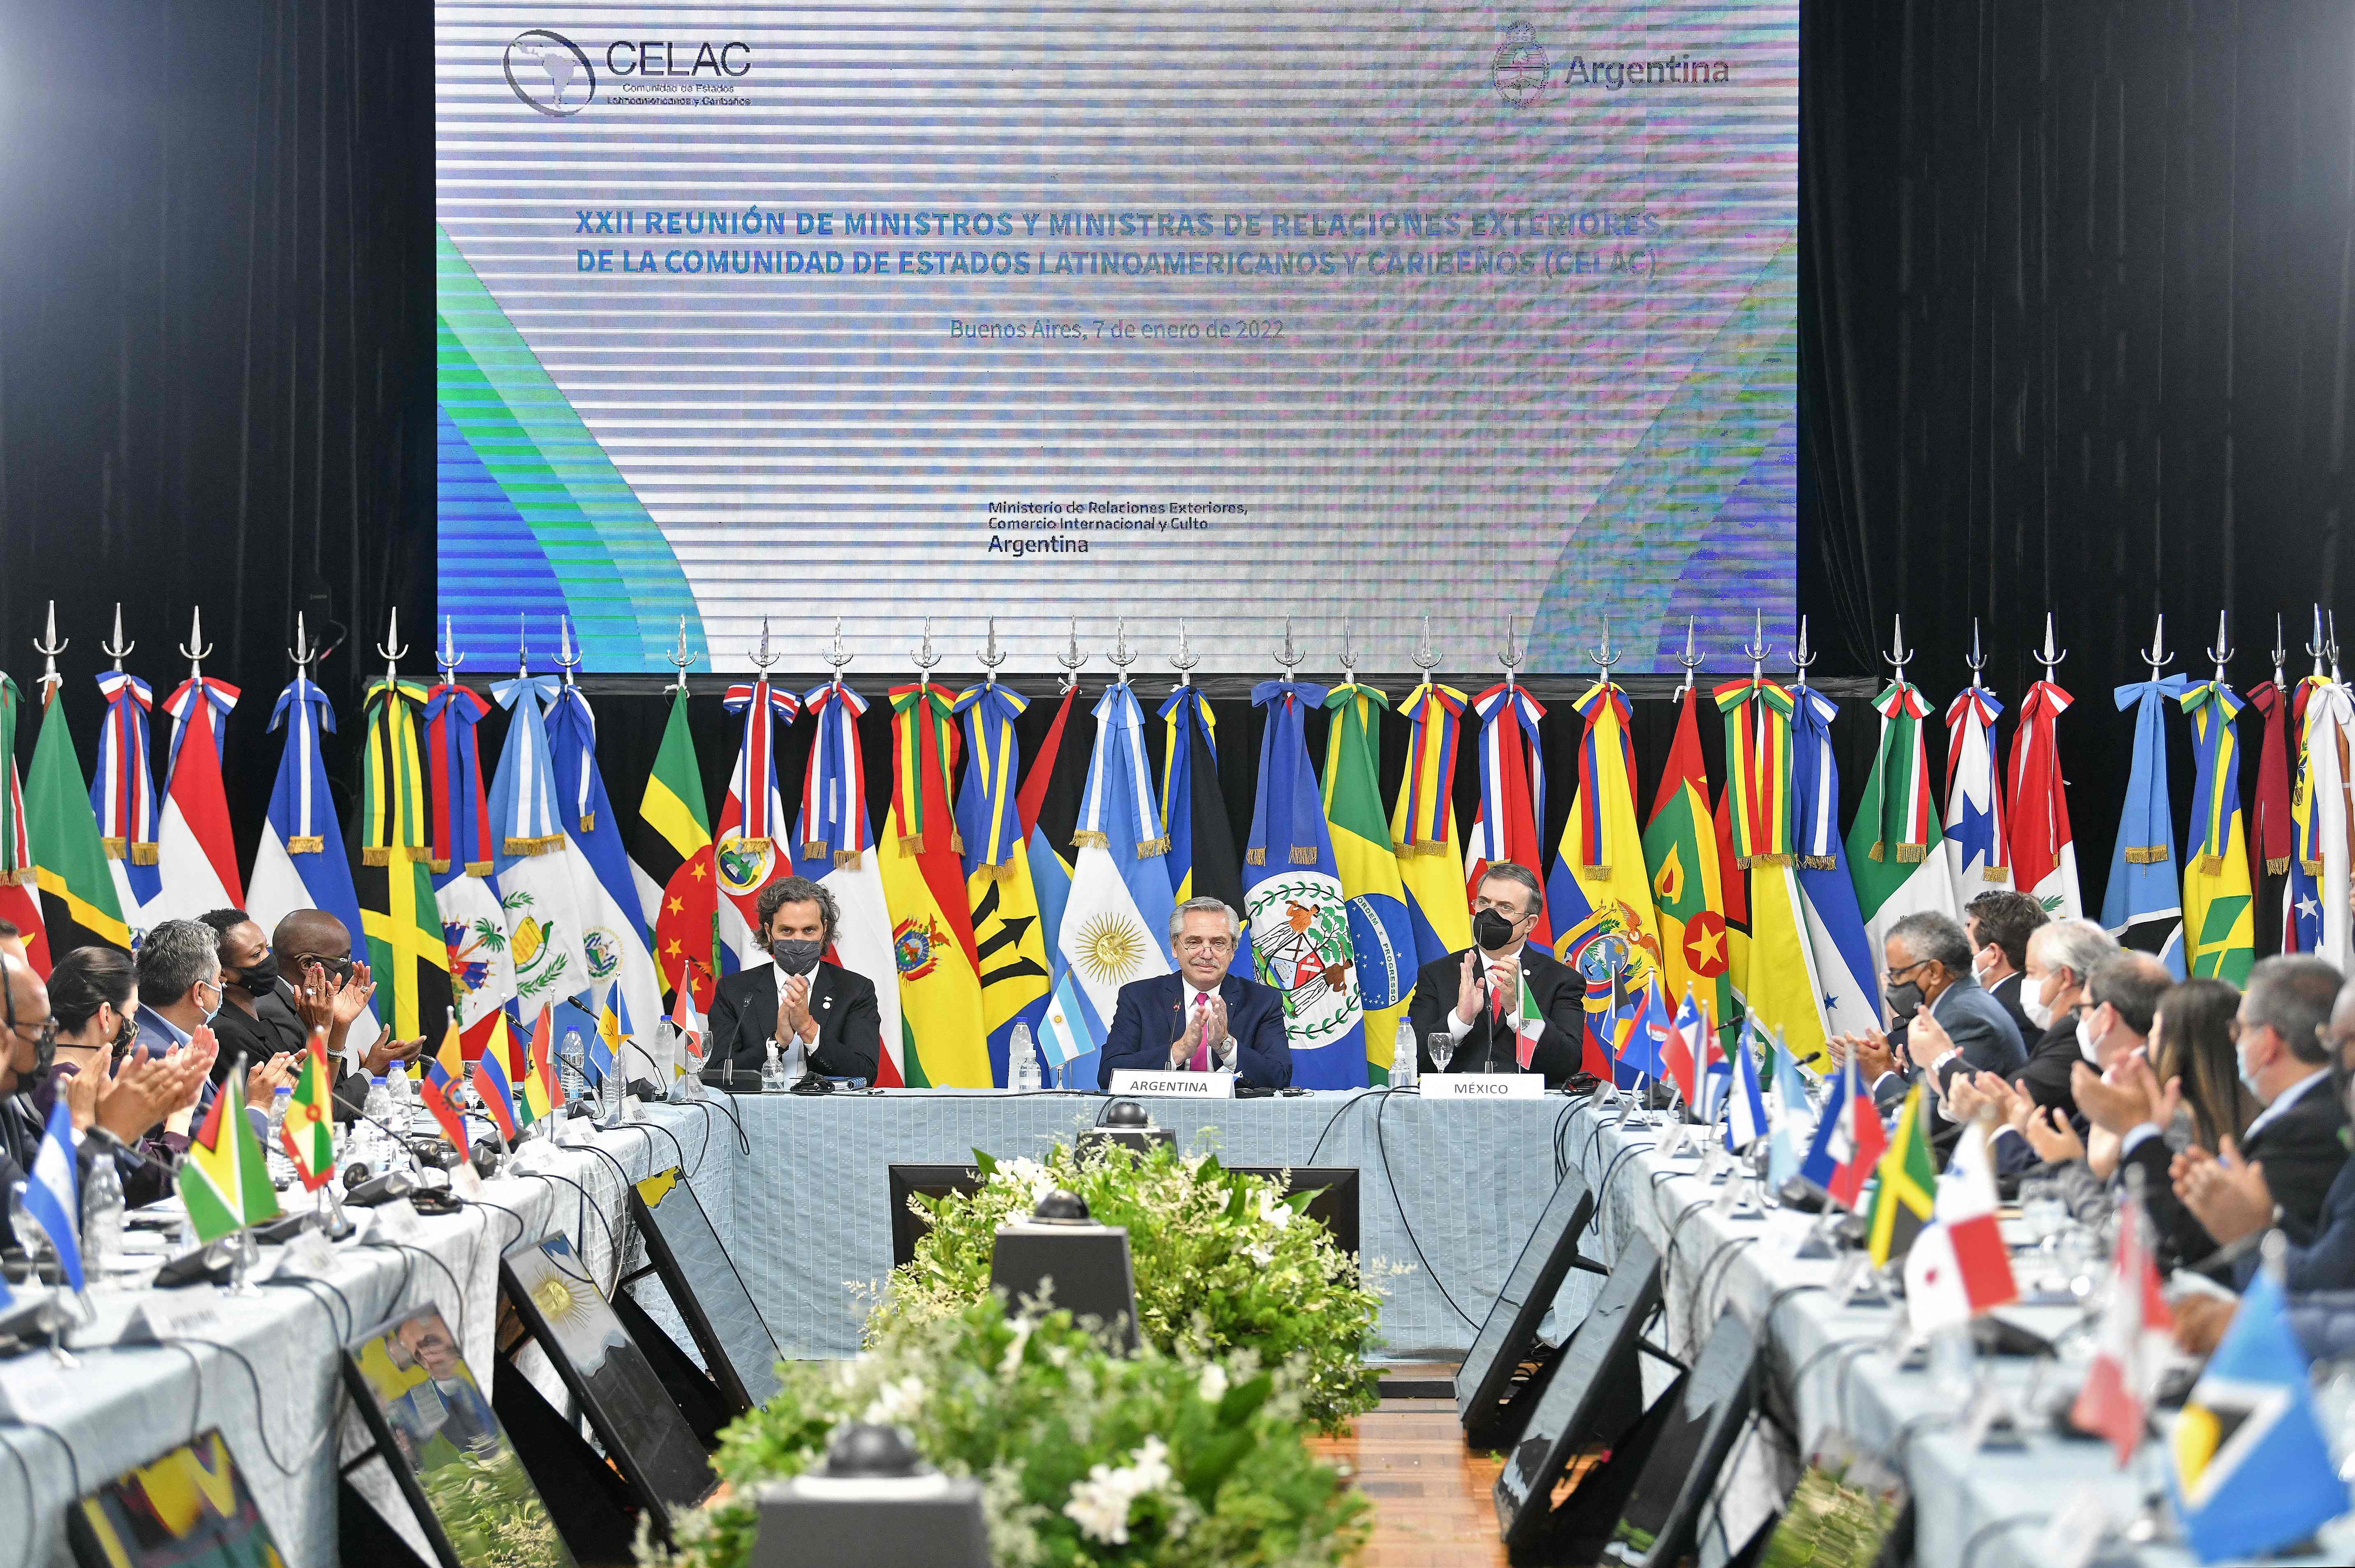  La VII Cumbre de la Comunidad de Estados Latinoamericanos y Caribeños (Celac) que se llevará a cabo esta semana en Argentina. (Foto Prensa Libre: AFP) 